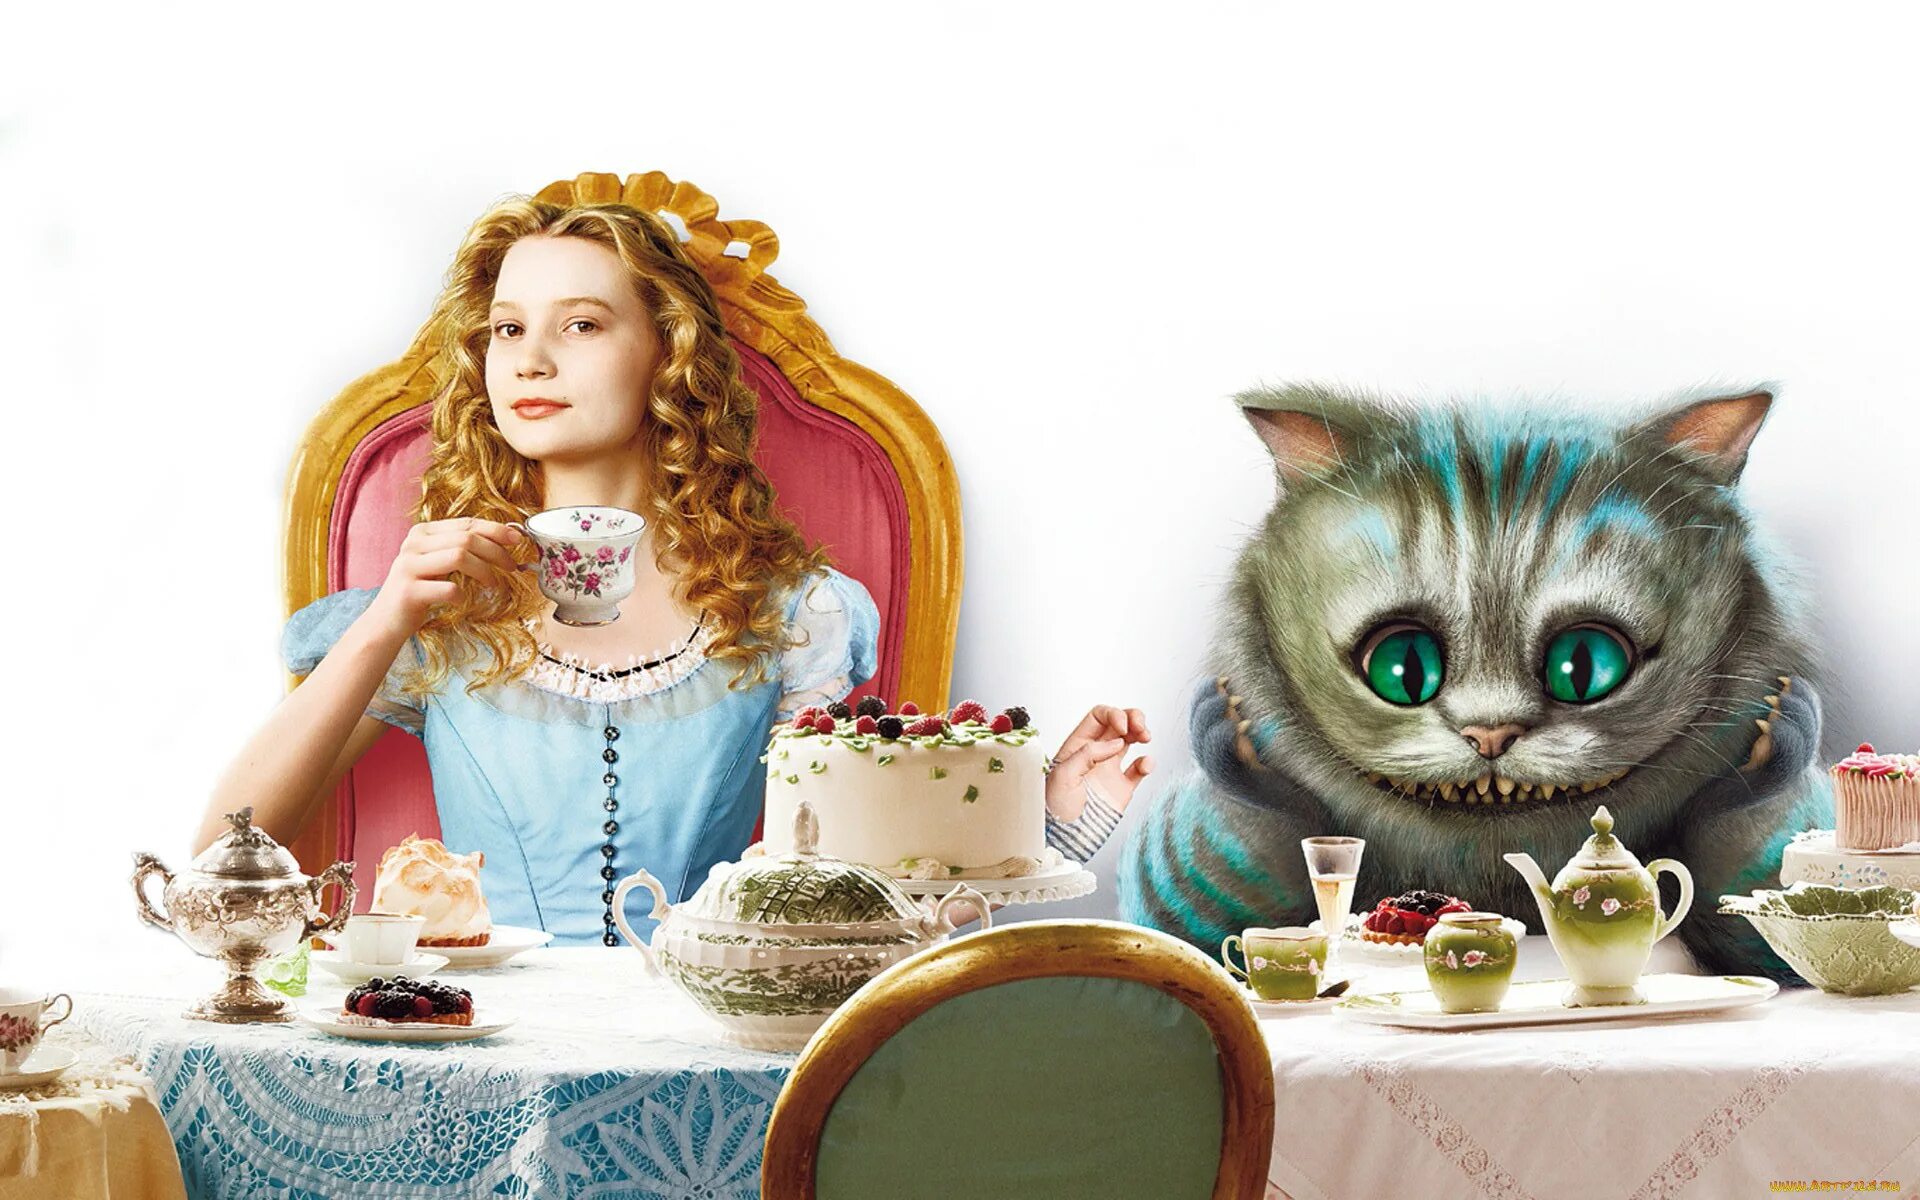 Алиса в стране чудес 7 глава. Алиса из Алисы в стране чудес. Чеширский кот Алиса в стране чудес. Алиса в Зазеркалье чаепитие. Алиса в стране чудесалиспа.